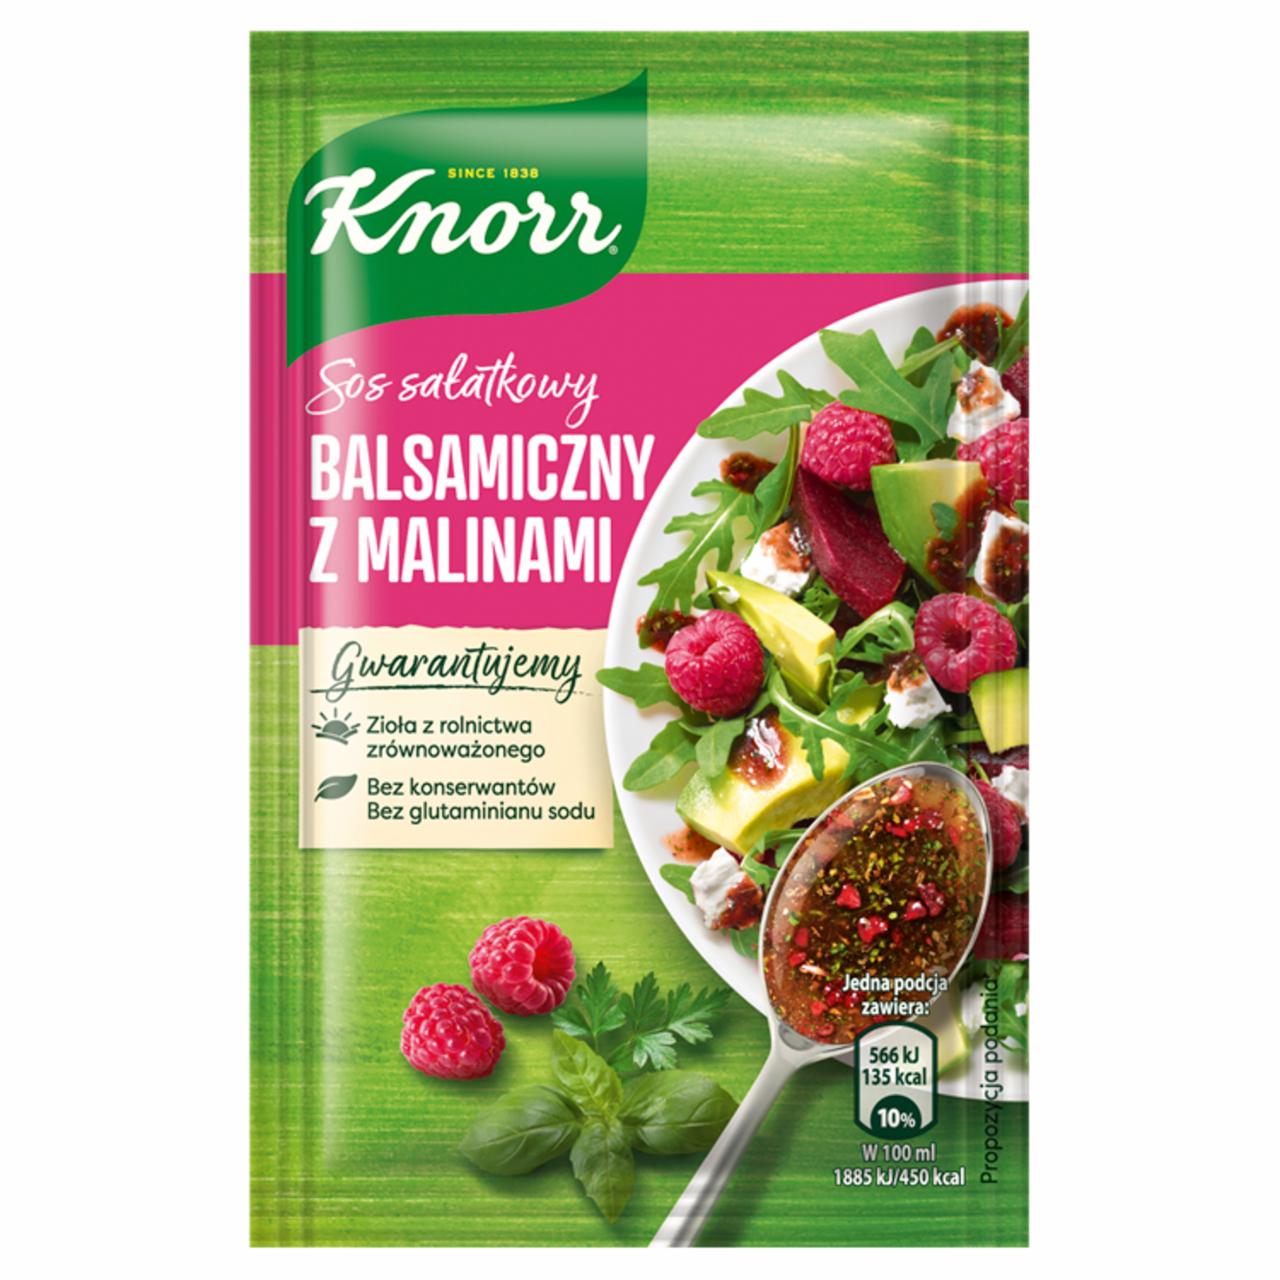 Zdjęcia - Knorr Sos sałatkowy balsamiczny z malinami 7,5 g